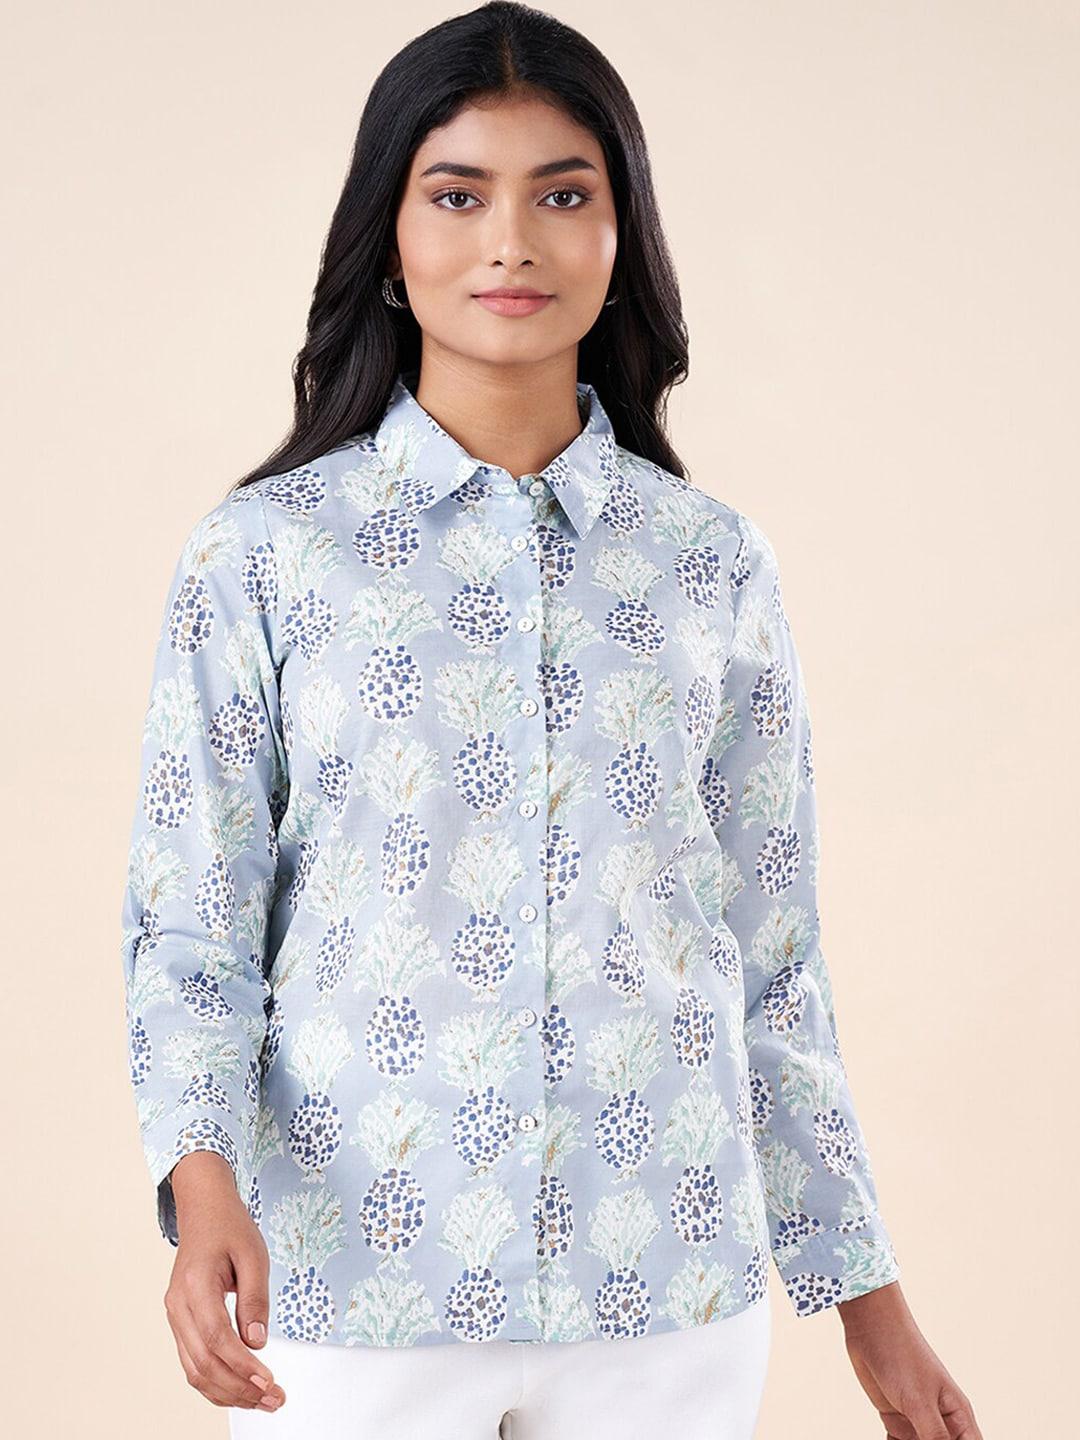 akkriti by pantaloons conversational printed high-low casual shirt